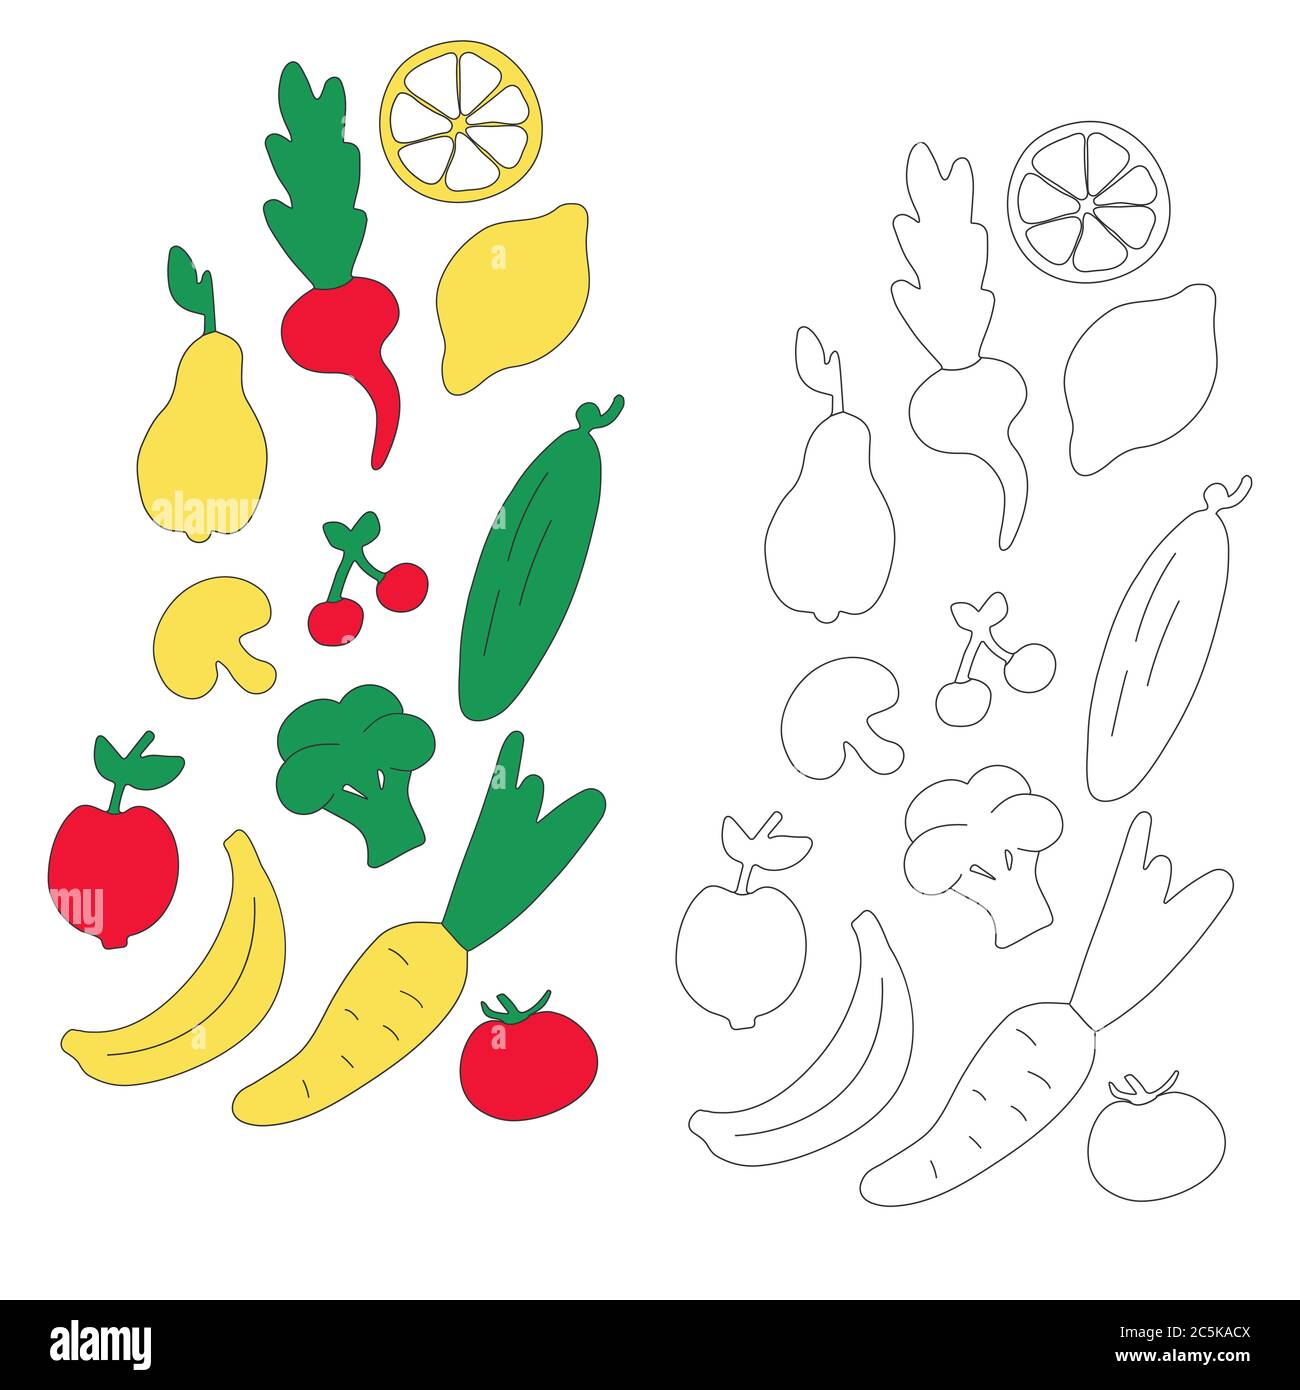 Légumes et fruits pour enfants. Icônes dessinées à la main. Livre de coloriage pour enfants. Vecteur Illustration de Vecteur